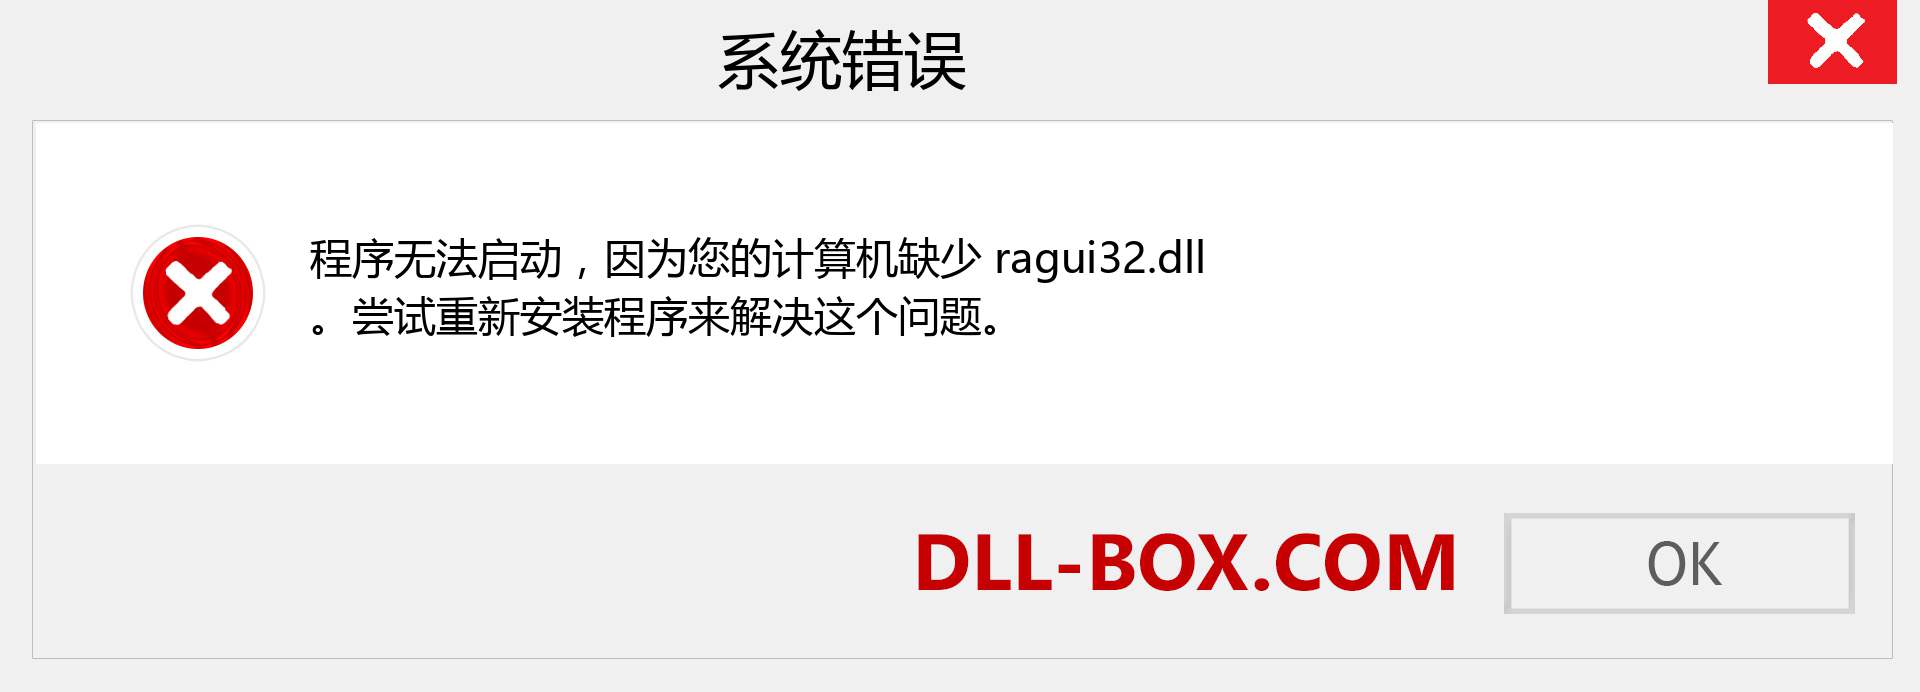 ragui32.dll 文件丢失？。 适用于 Windows 7、8、10 的下载 - 修复 Windows、照片、图像上的 ragui32 dll 丢失错误